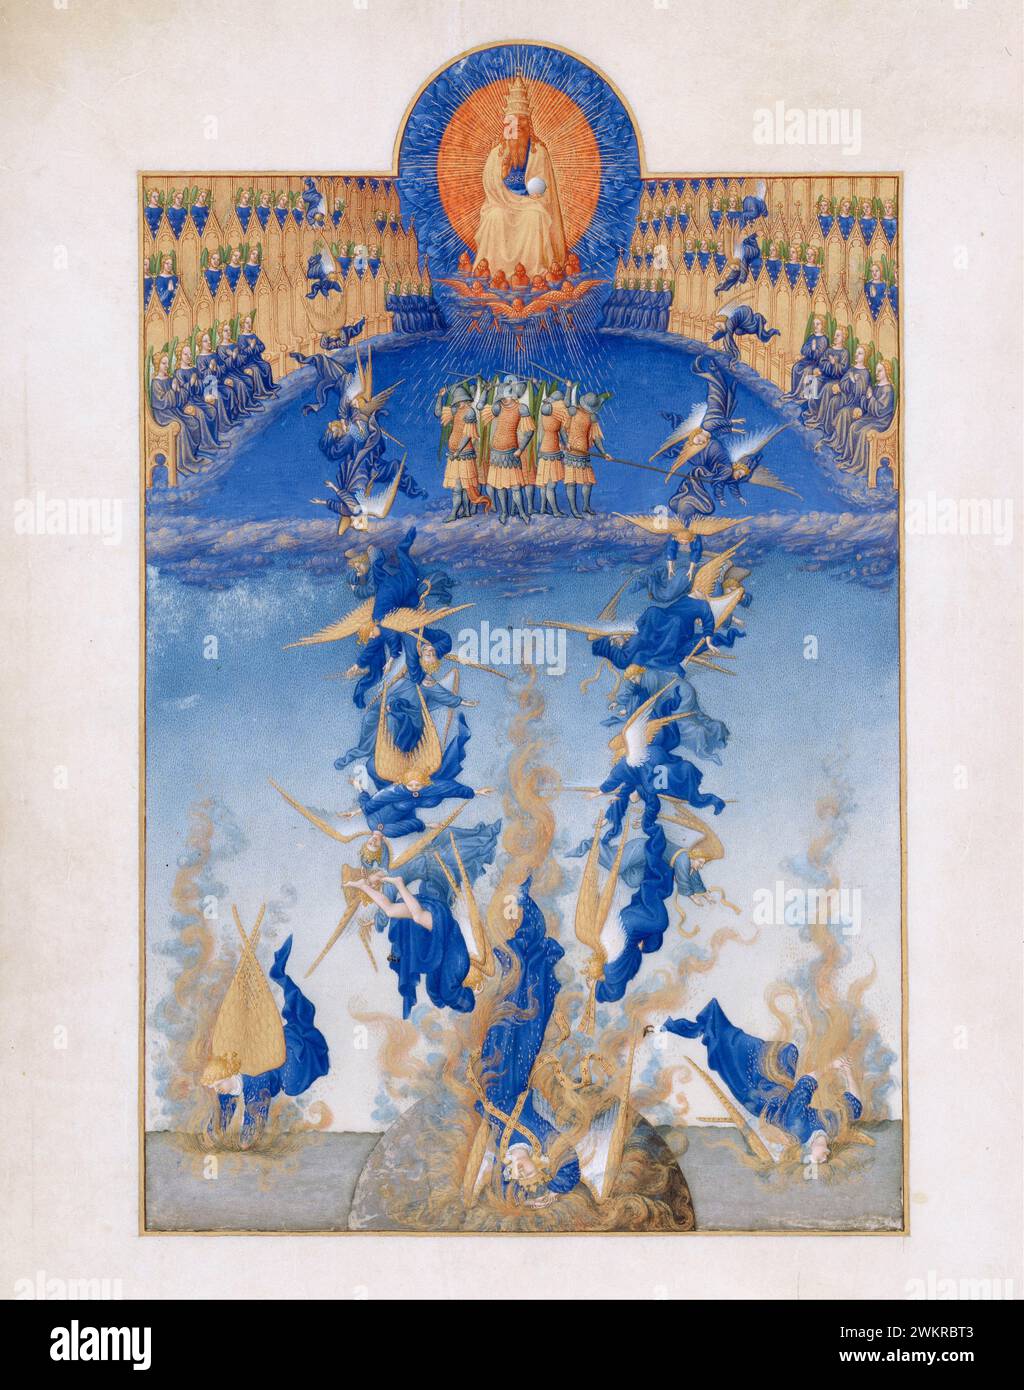 Limbourg Brothers, la chute des anges rebelles du très riches heures du duc de Berry manuscrit enluminé à tempera sur vélin, 1411-1416 Banque D'Images